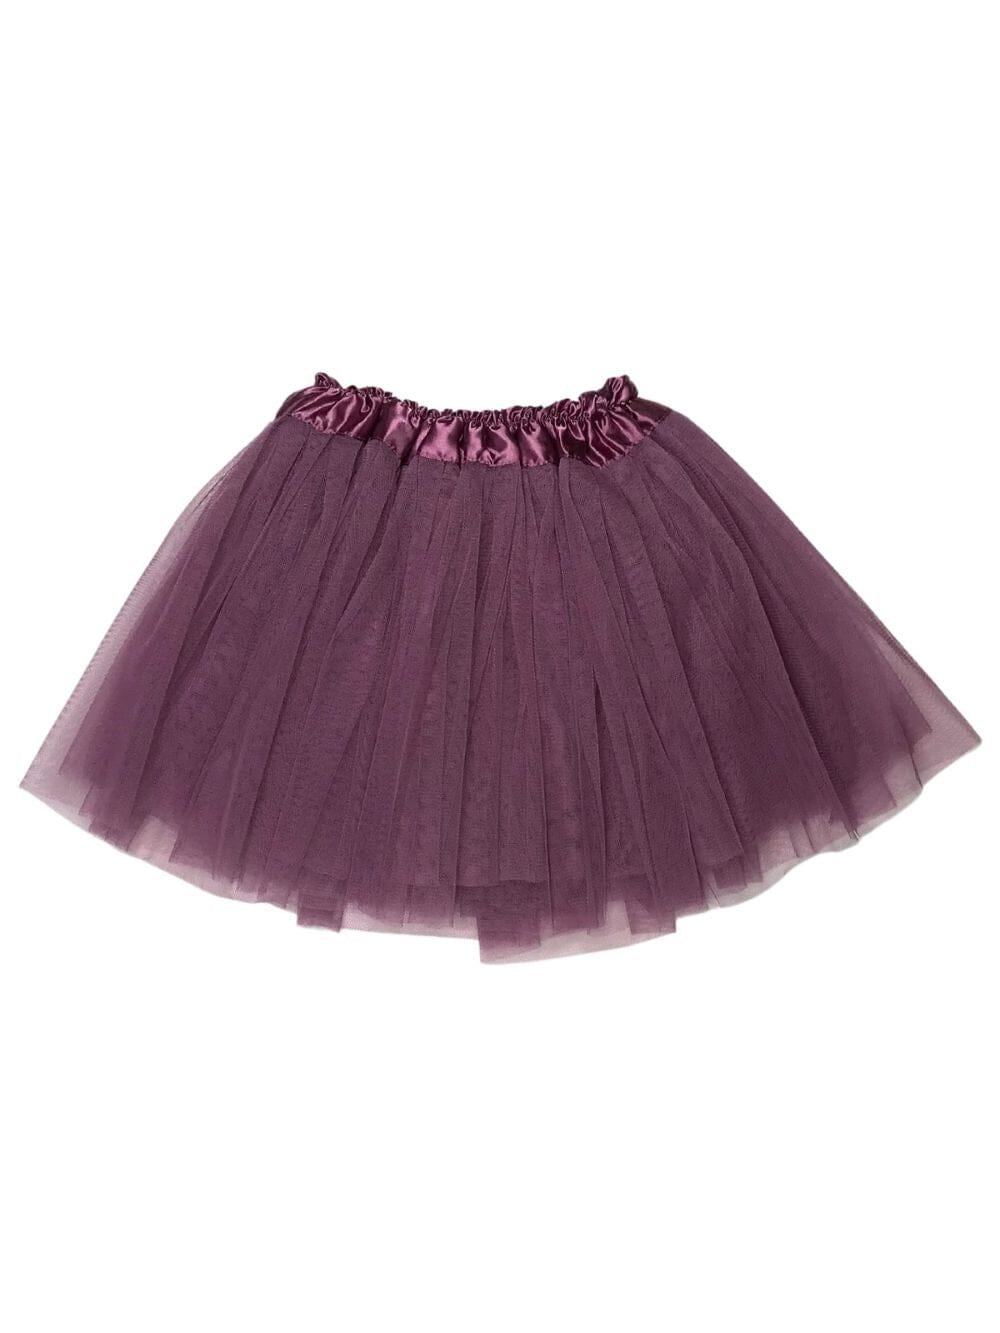 Plum Tutu Skirt - Kids Size 3-Layer Tulle Basic Ballet Dance Costume Tutus for Girls - Sydney So Sweet